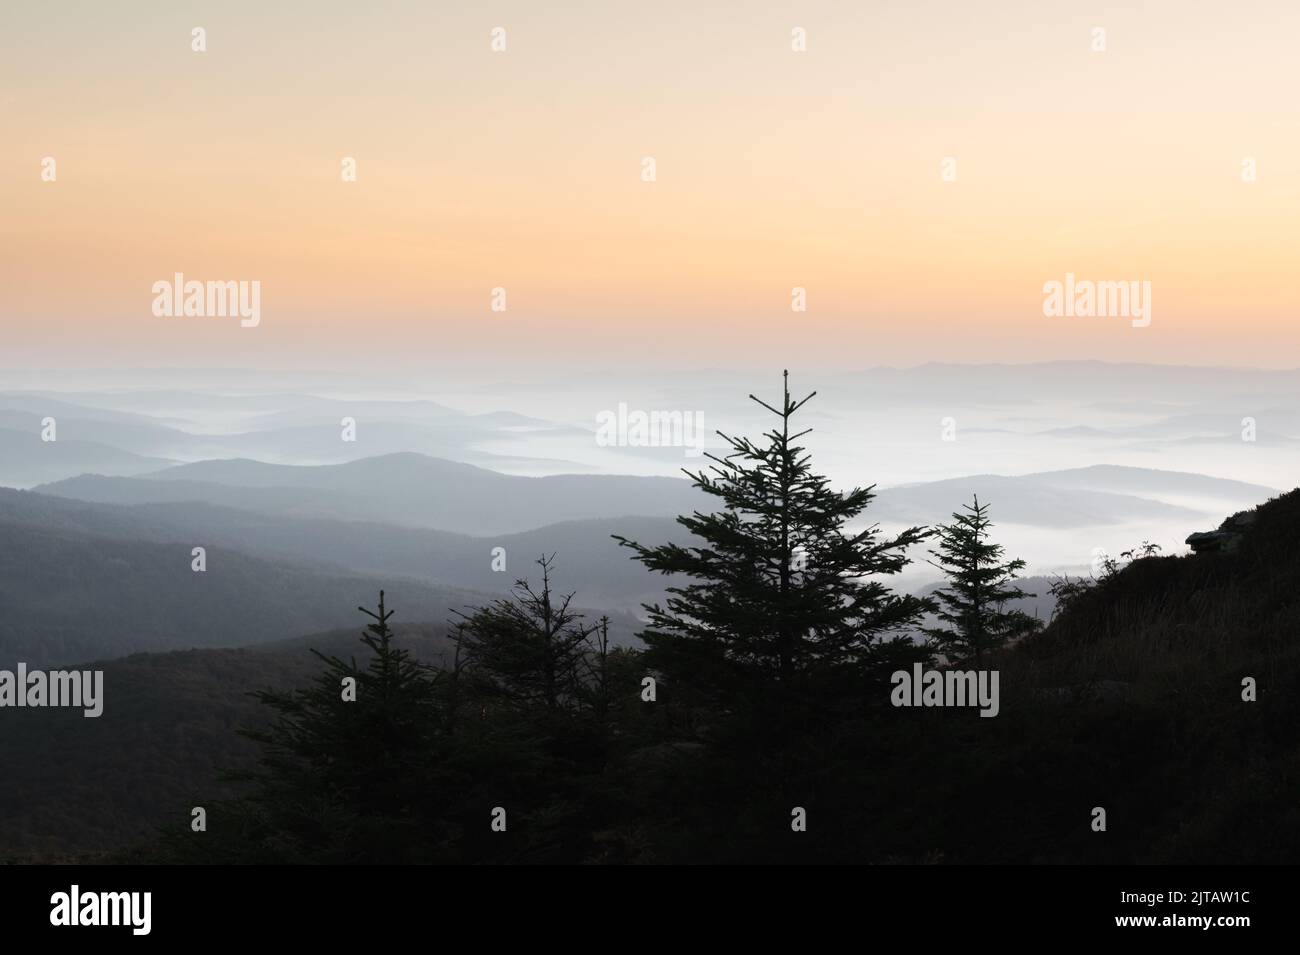 Brouillard matinal dans les montagnes d'automne. Silhouettes de sapins au premier plan. Magnifique lever de soleil en arrière-plan. Photographie de paysage Banque D'Images